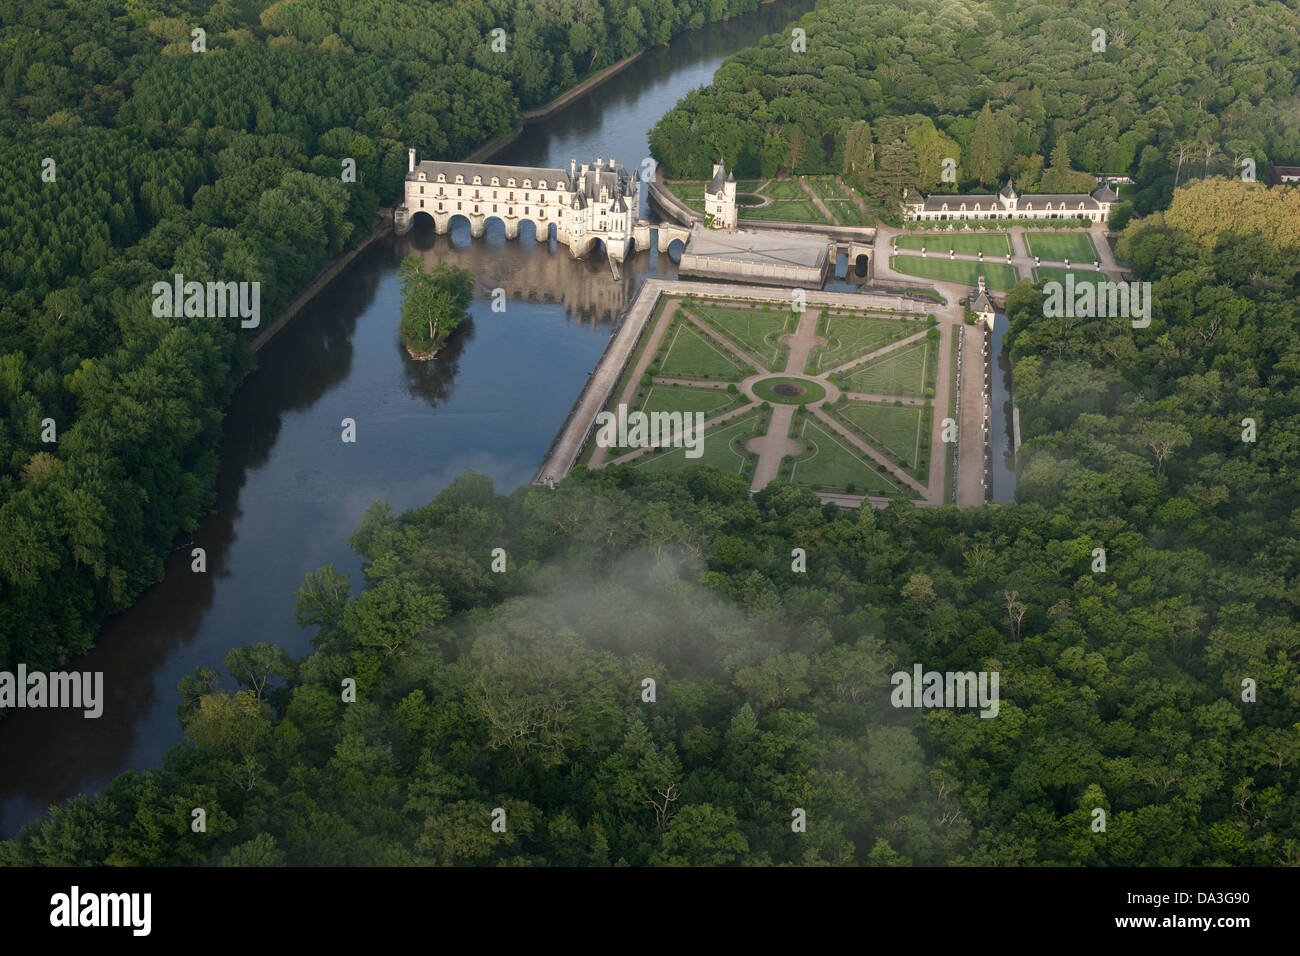 LUFTAUFNAHME. Schloss Chenonceau am Cher River, Diane de Poitiers Garden am linken Ufer. Chenonceaux, Centre-Val de Loire, Frankreich. Stockfoto